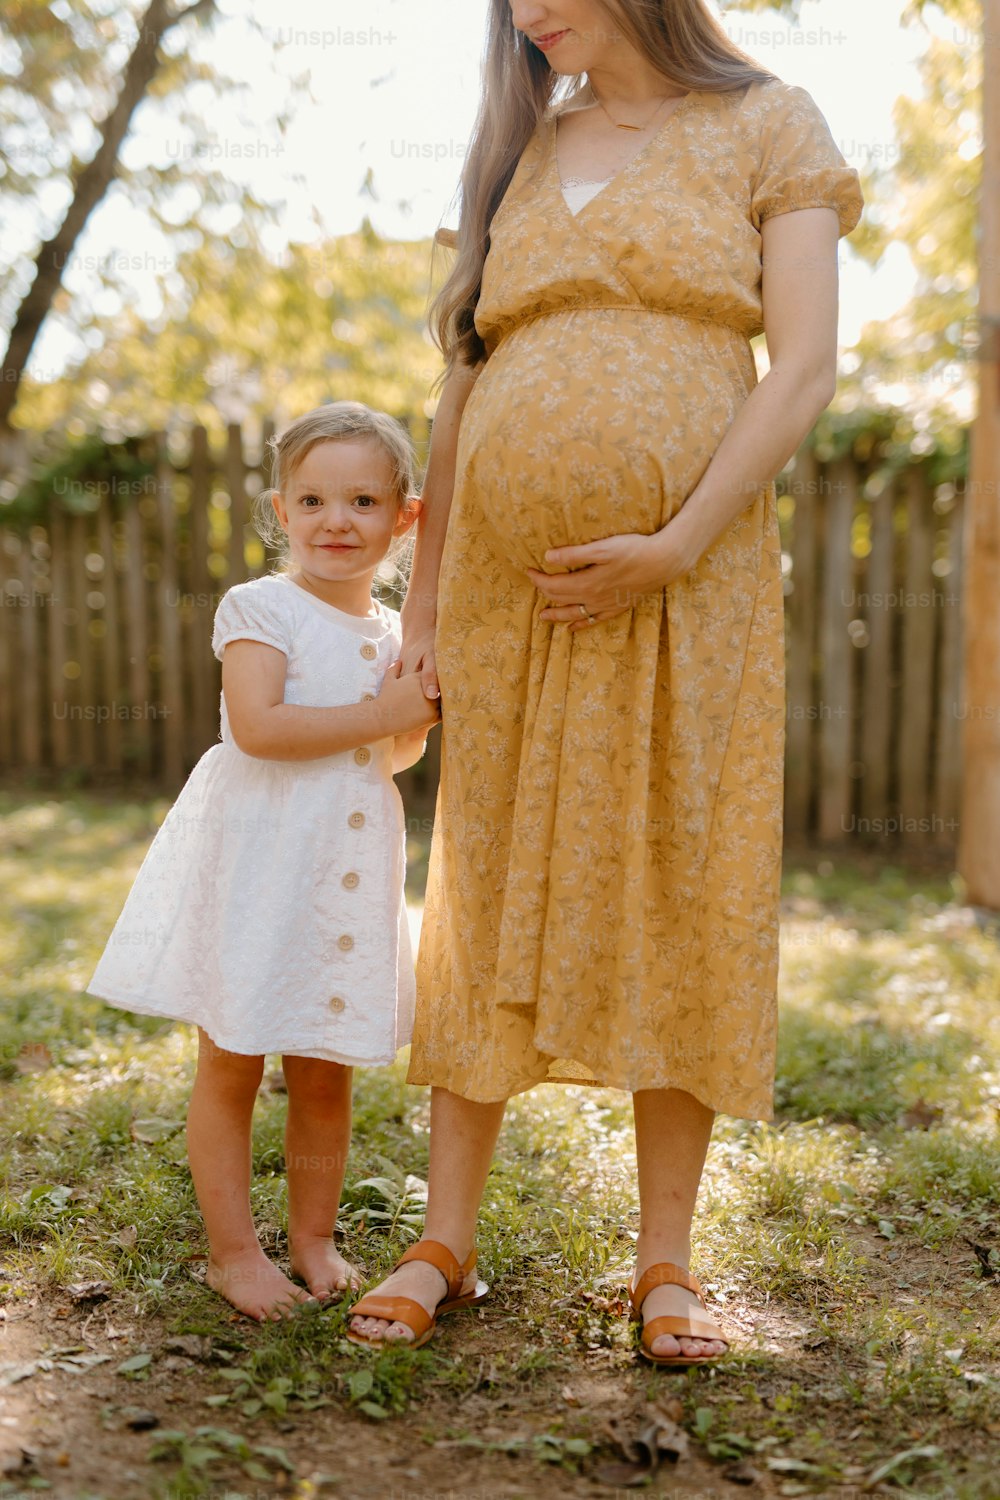 una mujer embarazada de pie junto a una niña pequeña